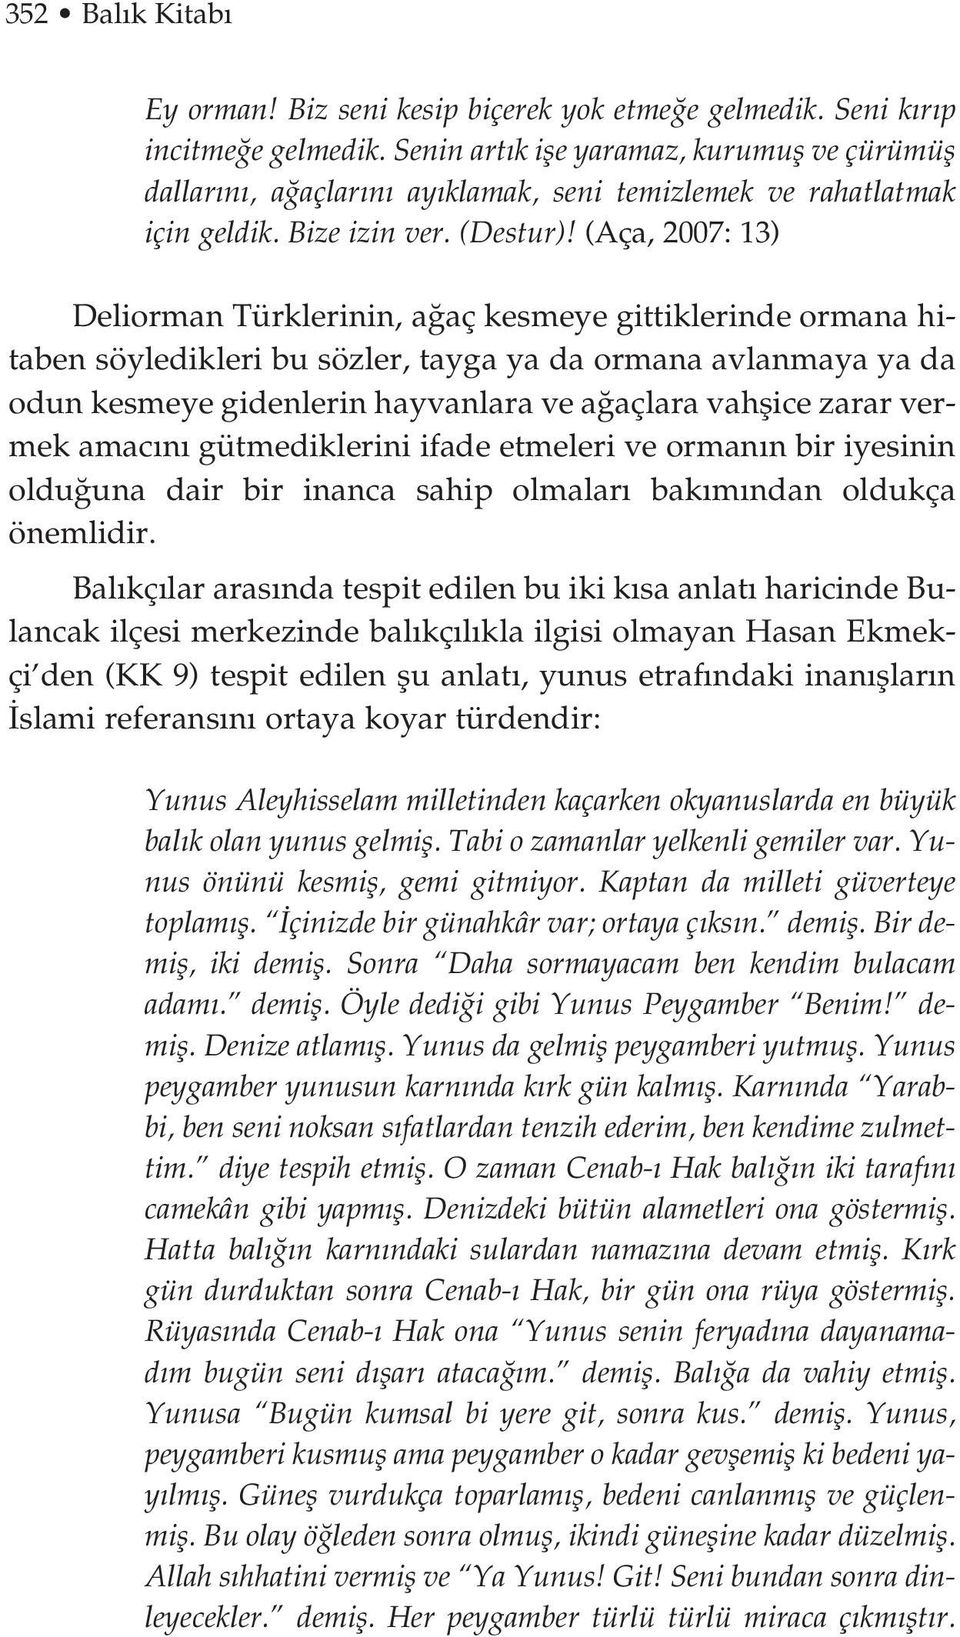 (Aça, 2007: 13) Deliorman Türklerinin, a aç kesmeye gittiklerinde ormana hitaben söyledikleri bu sözler, tayga ya da ormana avlanmaya ya da odun kesmeye gidenlerin hayvanlara ve a açlara vahflice